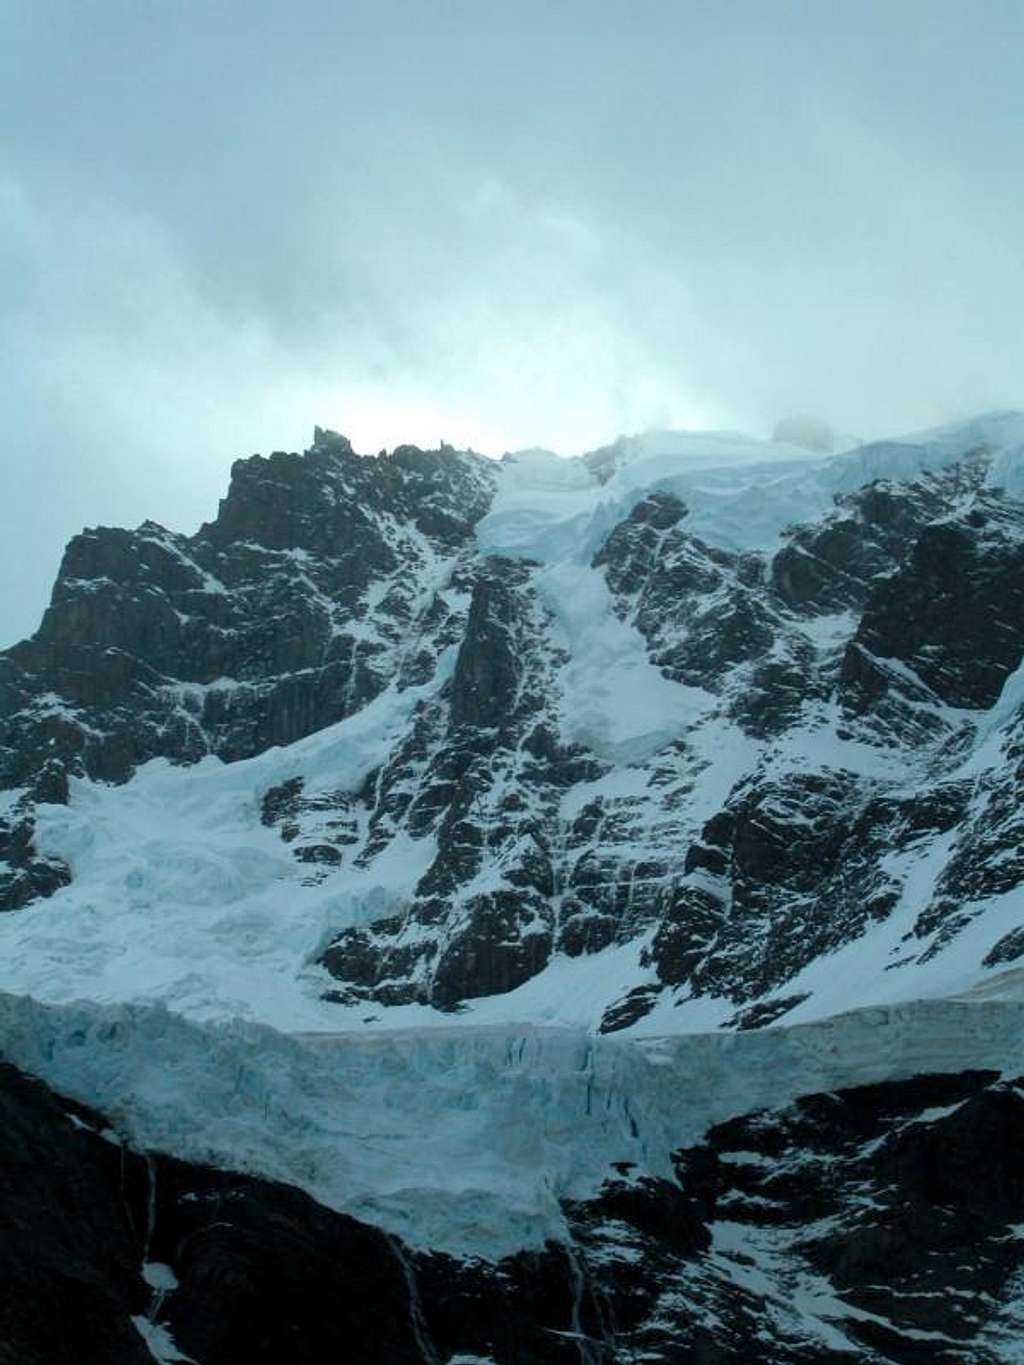 Torres del Paine - Glaciar de Los Frances